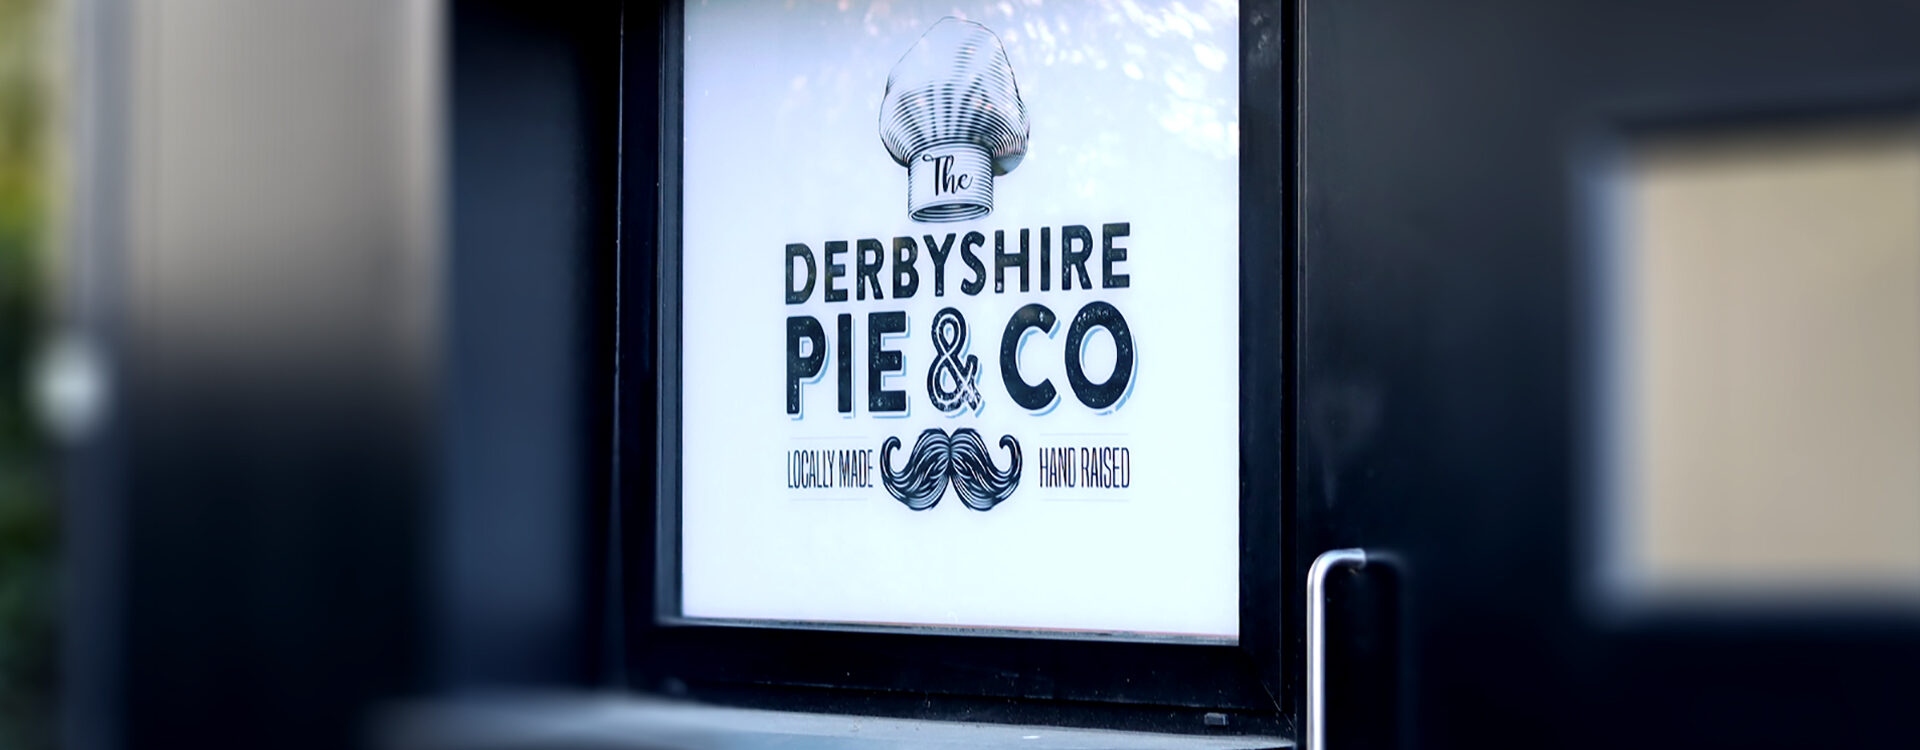 The Derbyshire Pie & Co